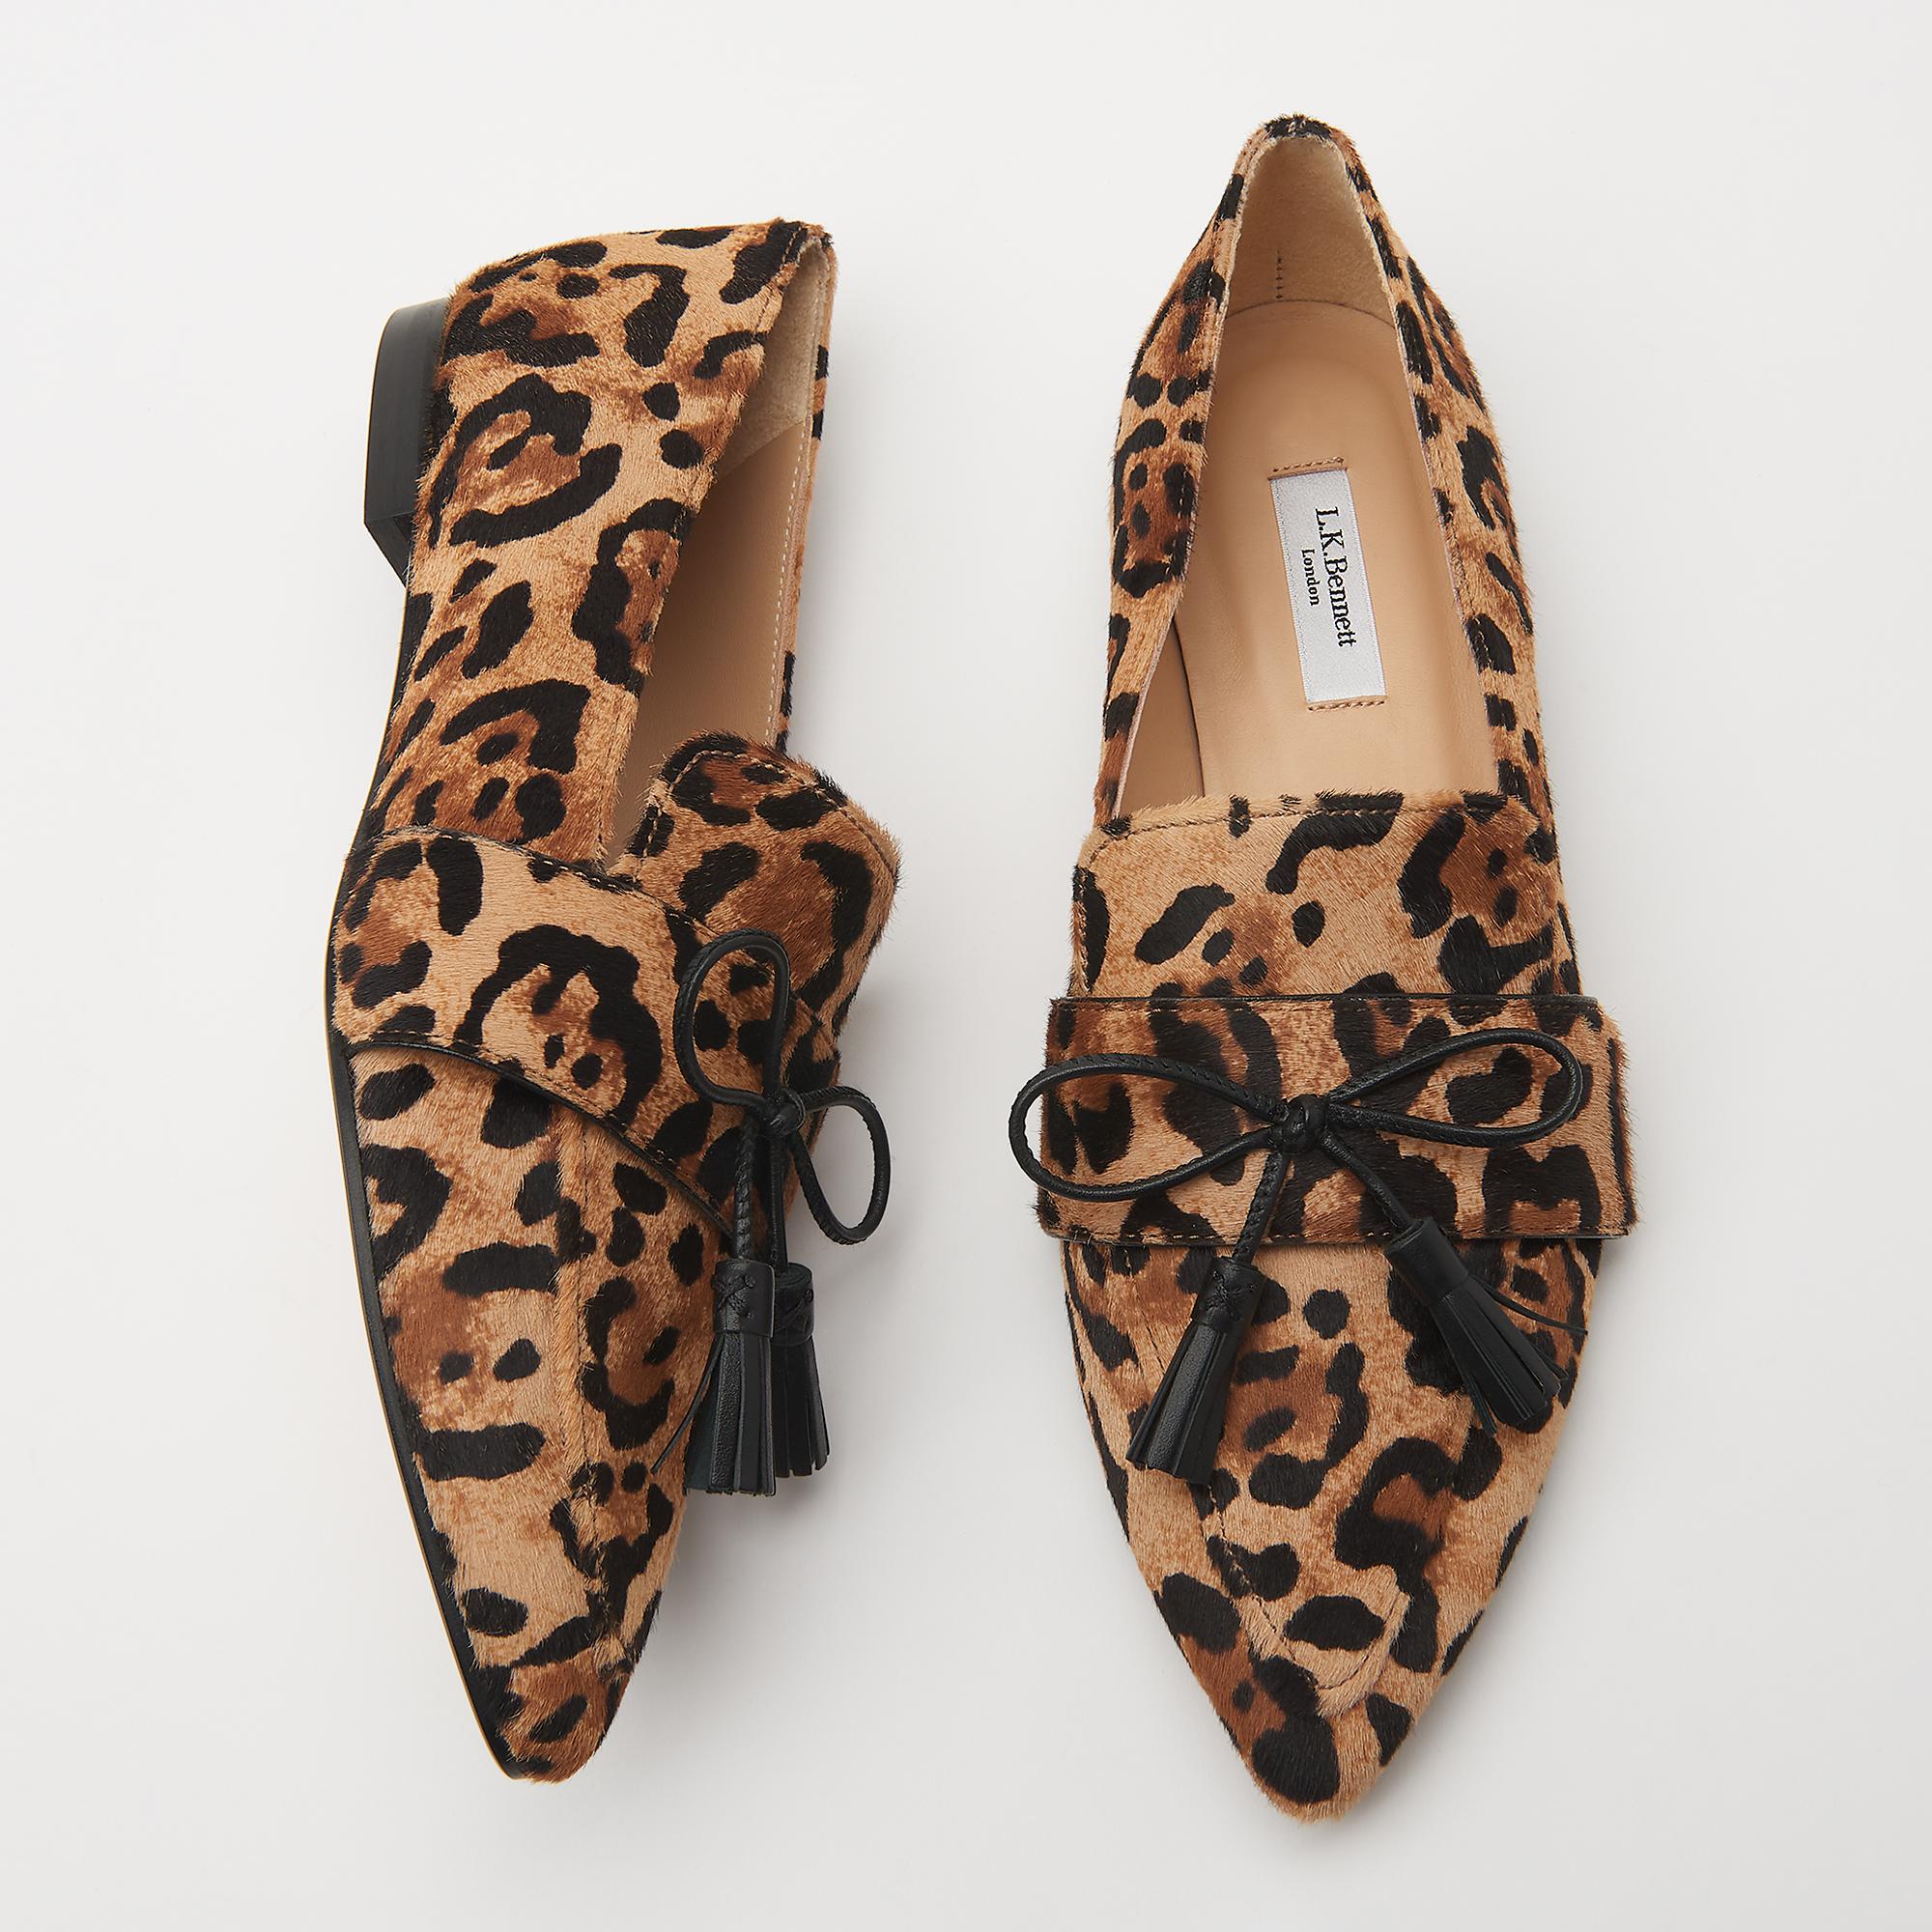 lk bennett leopard print shoes